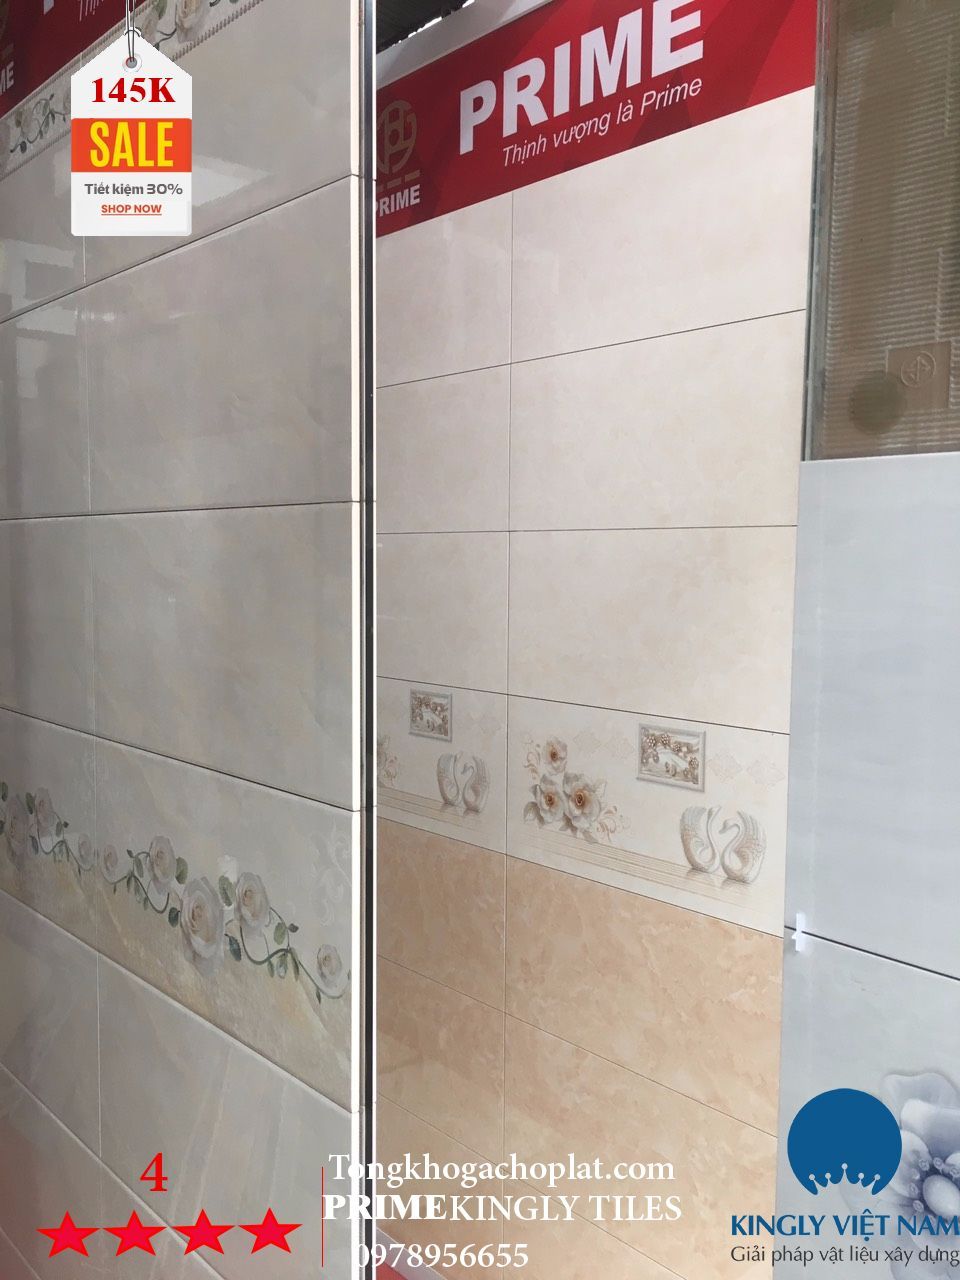 Bộ Gạch ốp nhà vệ sinh Prime 30x60 2024 sẽ là giải pháp hoàn hảo cho phòng tắm nhà bạn với thiết kế đẹp và chất lượng tuyệt vời. Khám phá những thiết kế đa dạng cho phong cách riêng của bạn và giúp tạo nên một không gian tắm sang trọng và tiện nghi.